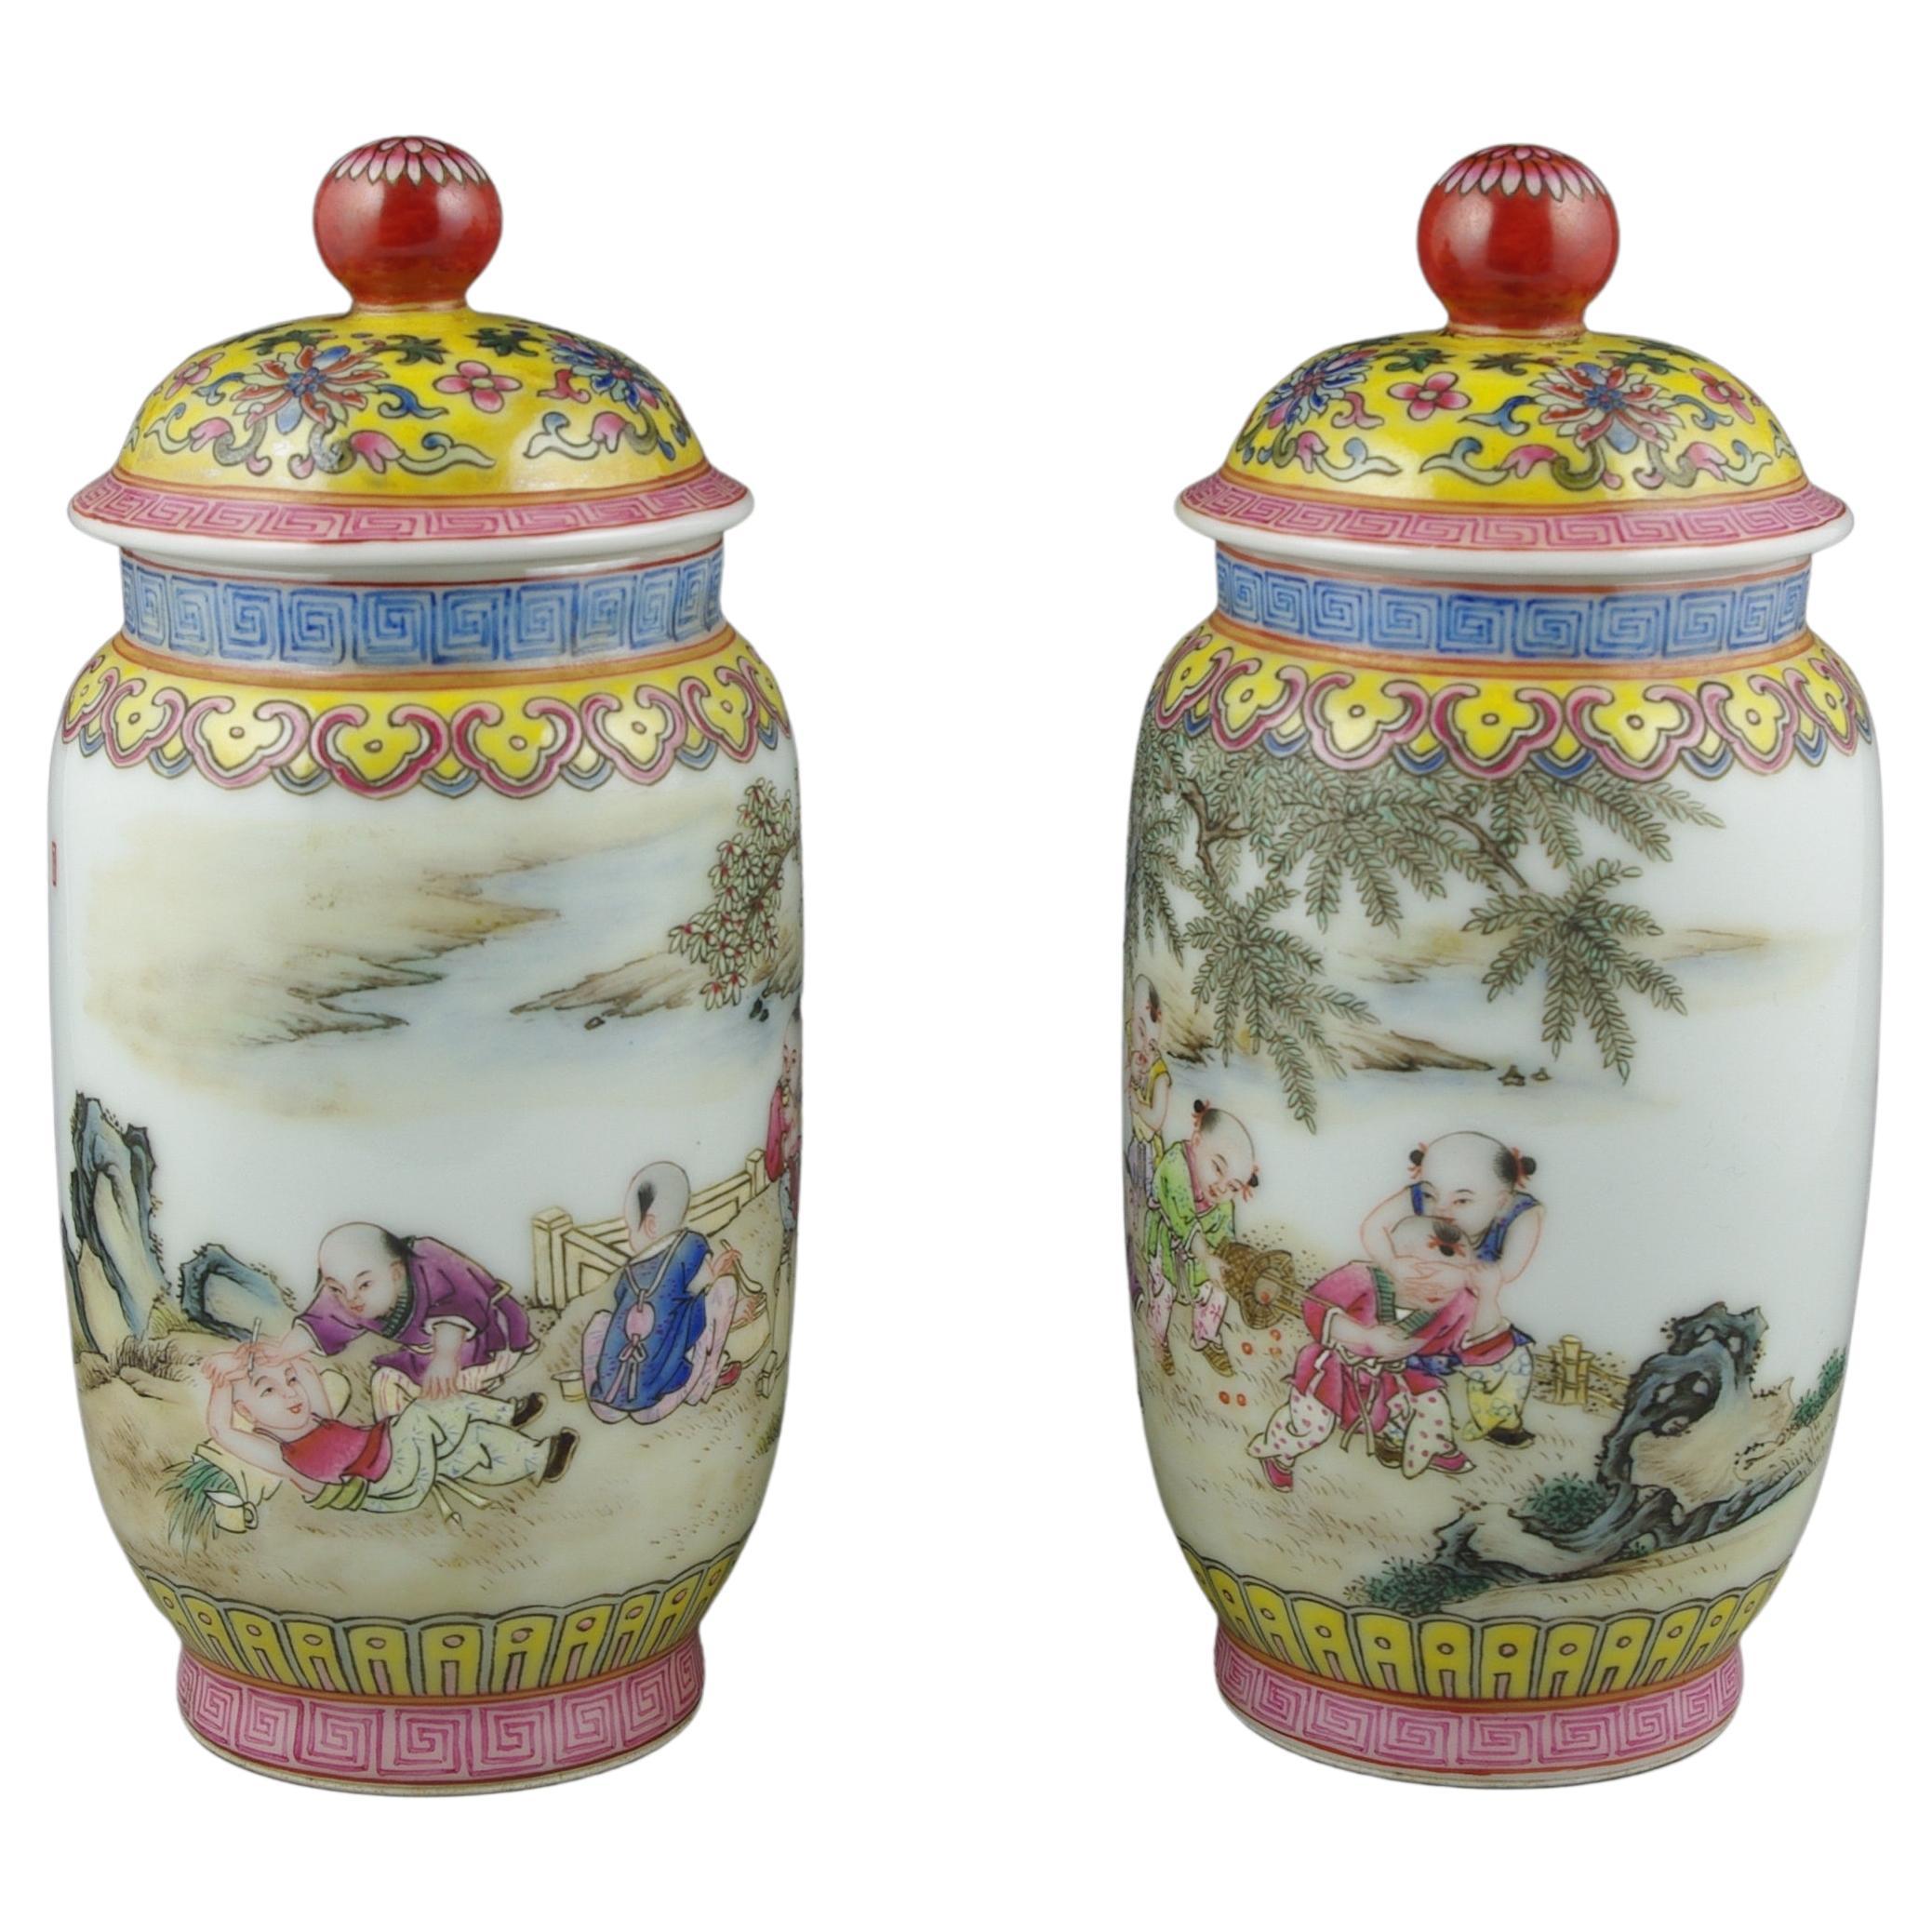 Une exquise paire de jarres couvertes chinoises, splendide représentation de la riche tapisserie de l'art chinois et de l'artisanat le plus raffiné. Chaque pot est une toile vibrante qui raconte une délicieuse histoire d'enfance, dépeinte à travers